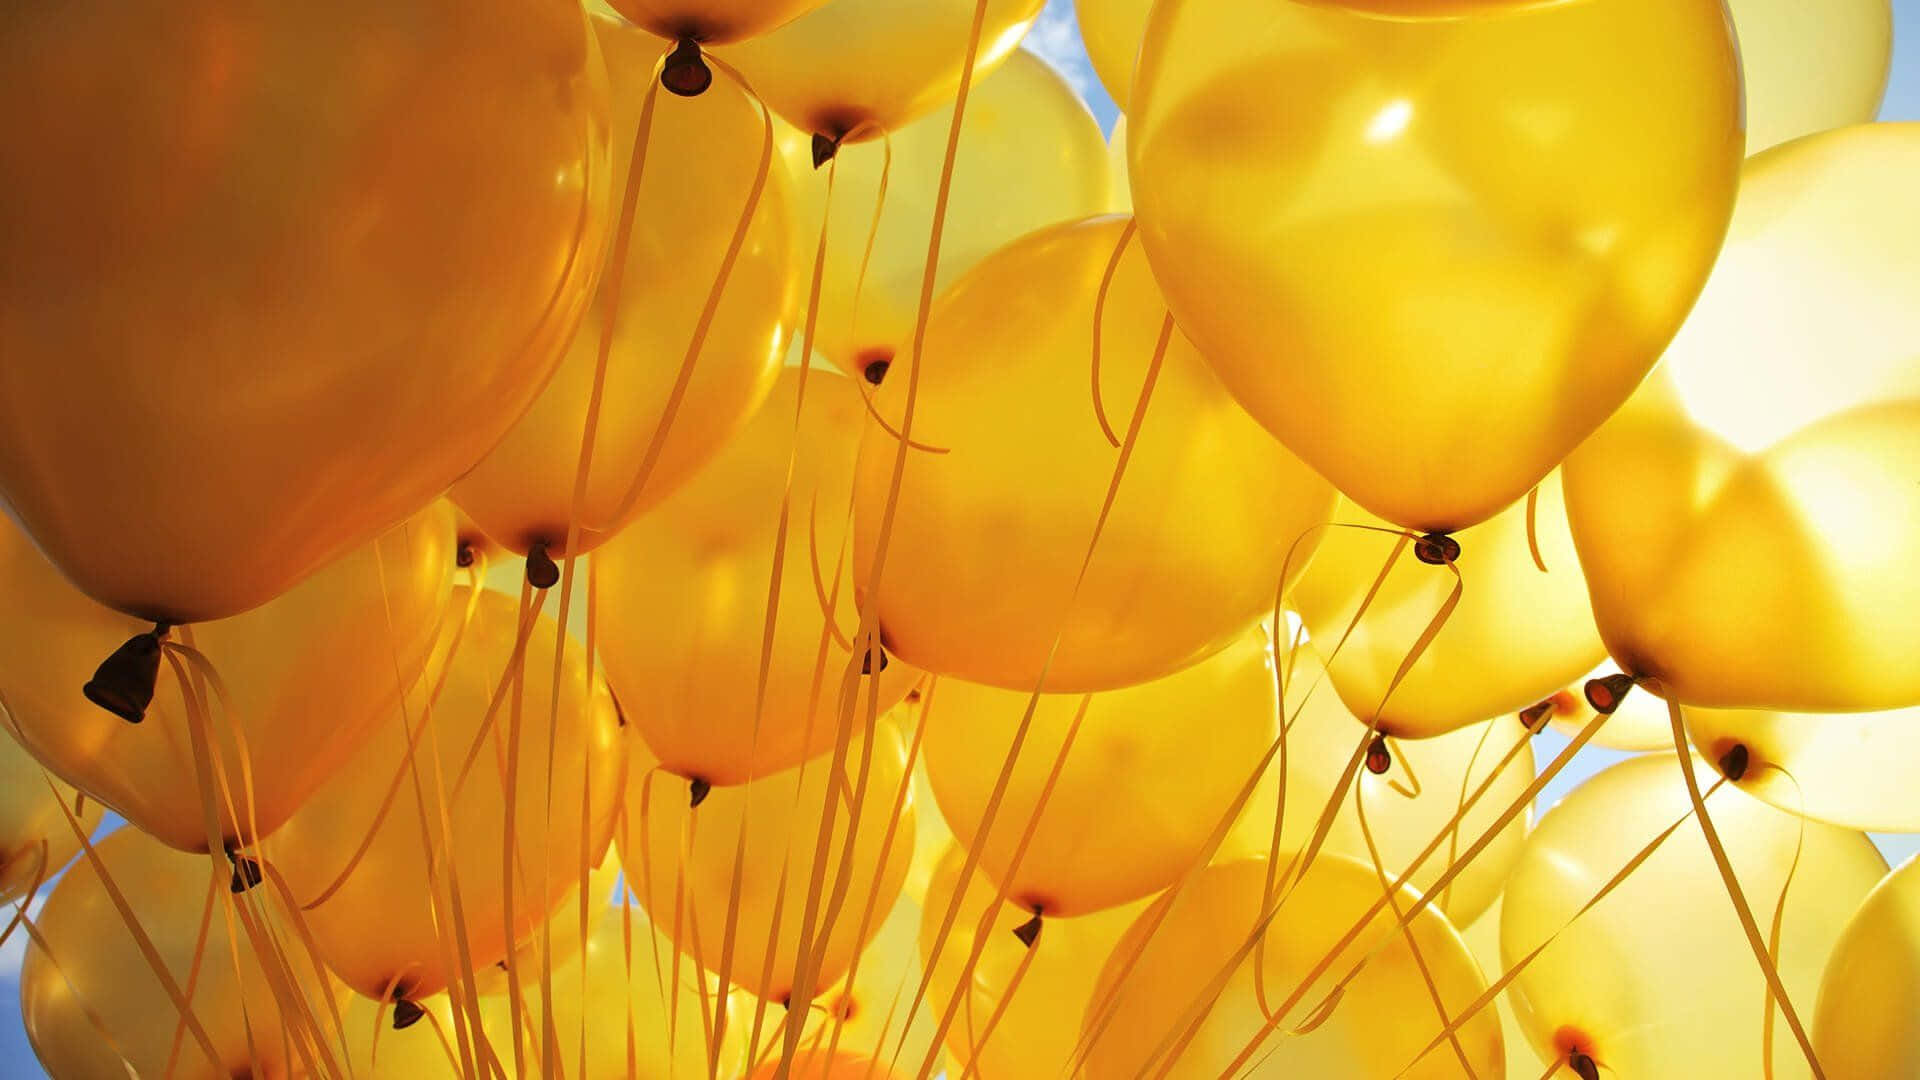 Light Yellow Balloons Wallpaper